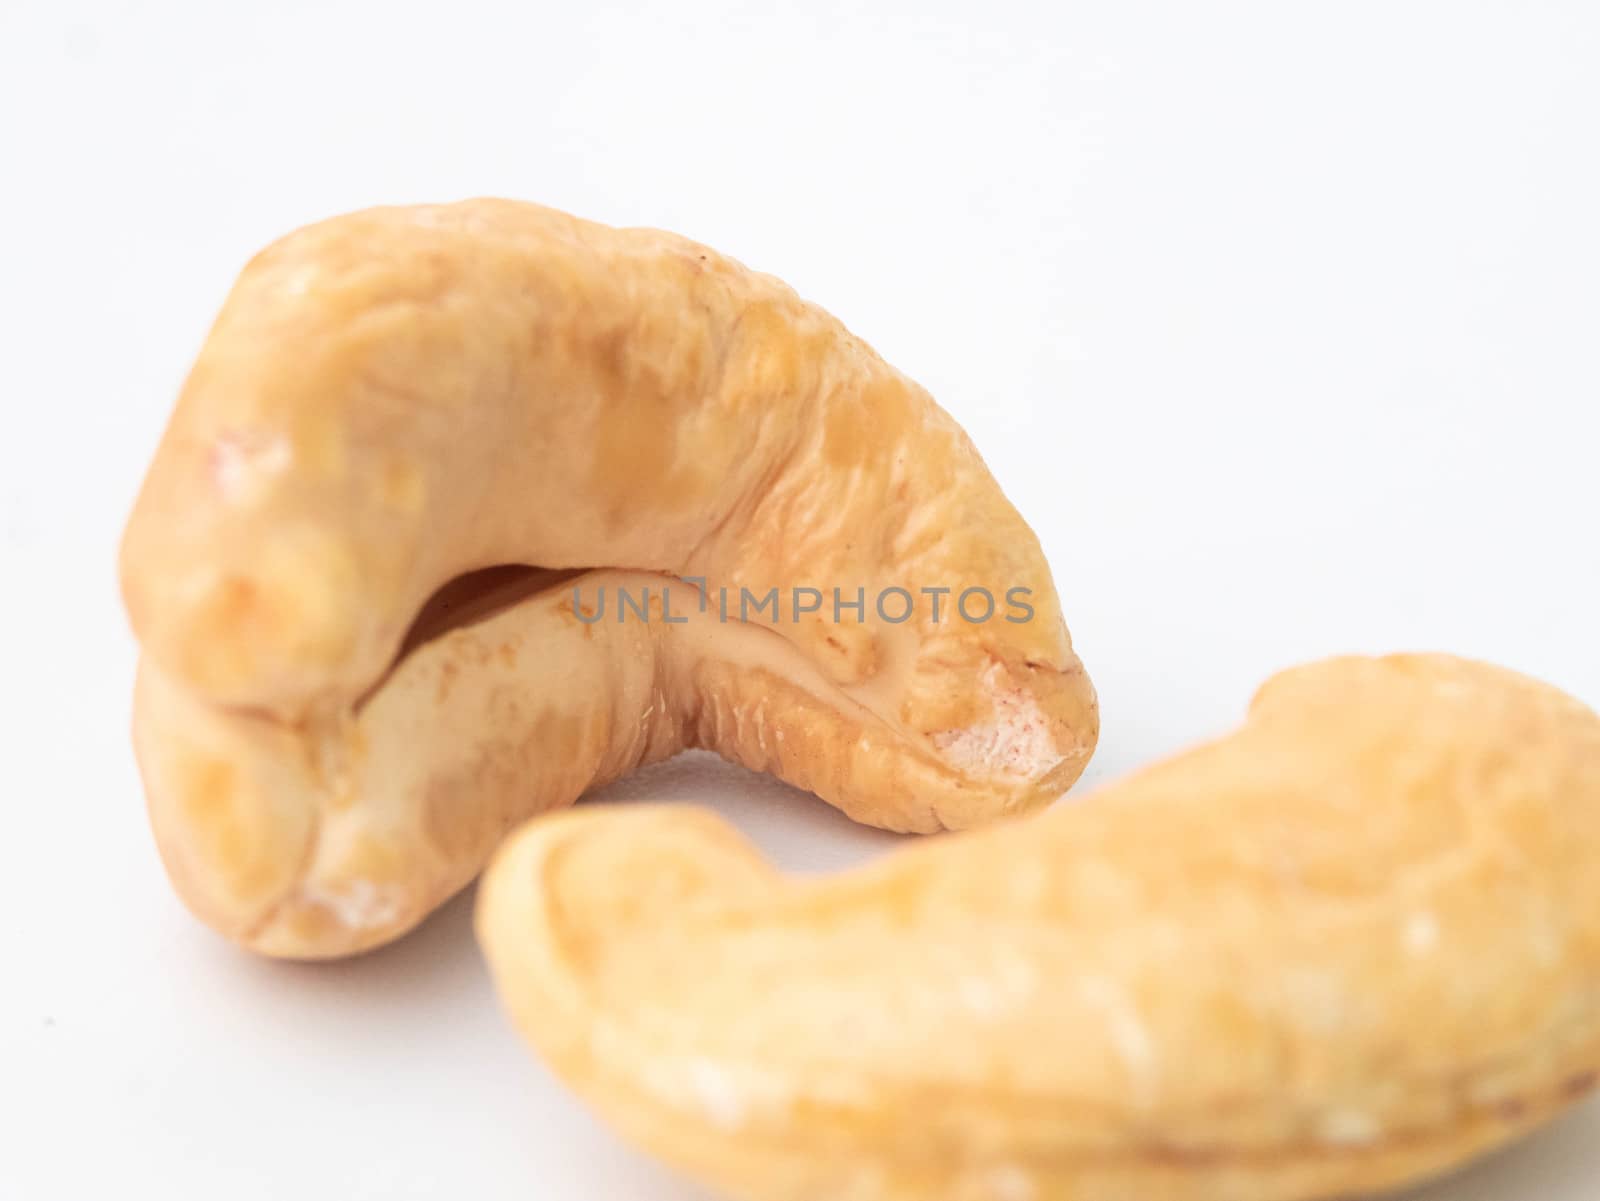 Close-up of cashew nut isolated on white background.